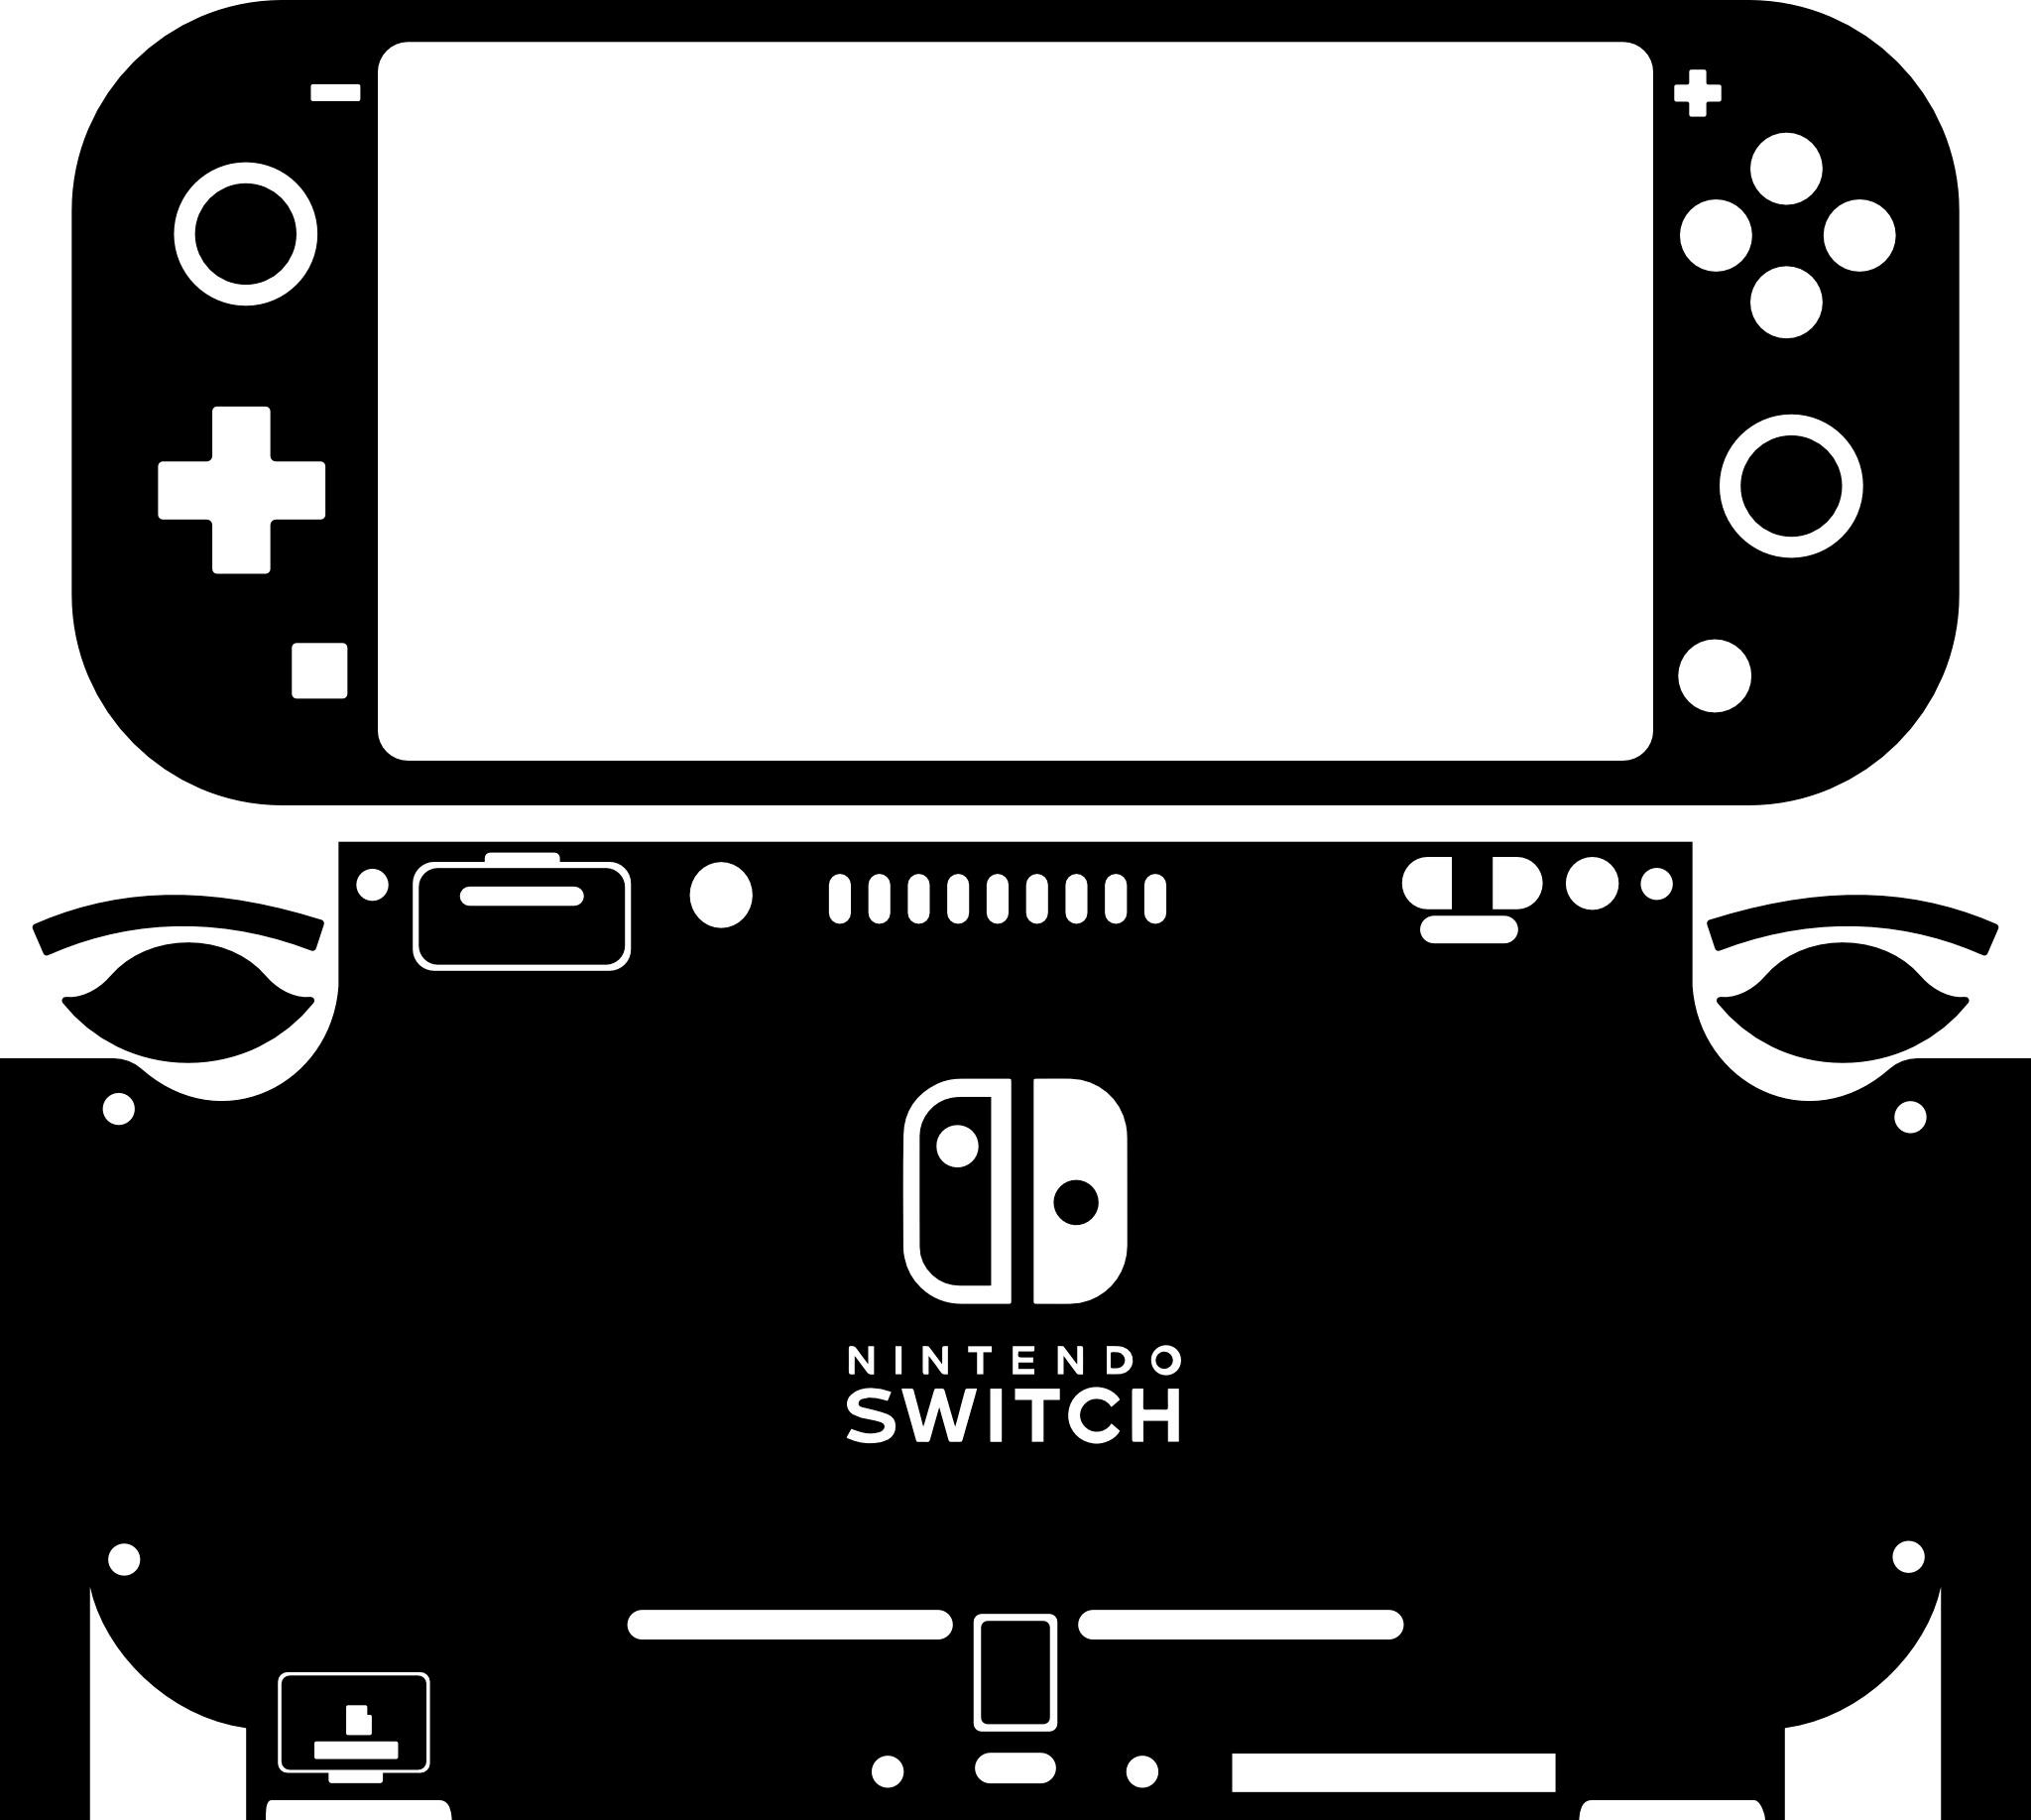 Skin decal dán Nintendo Switch Lite mẫu lá hồng lá xanh (dễ dán, đã cắt sẵn)